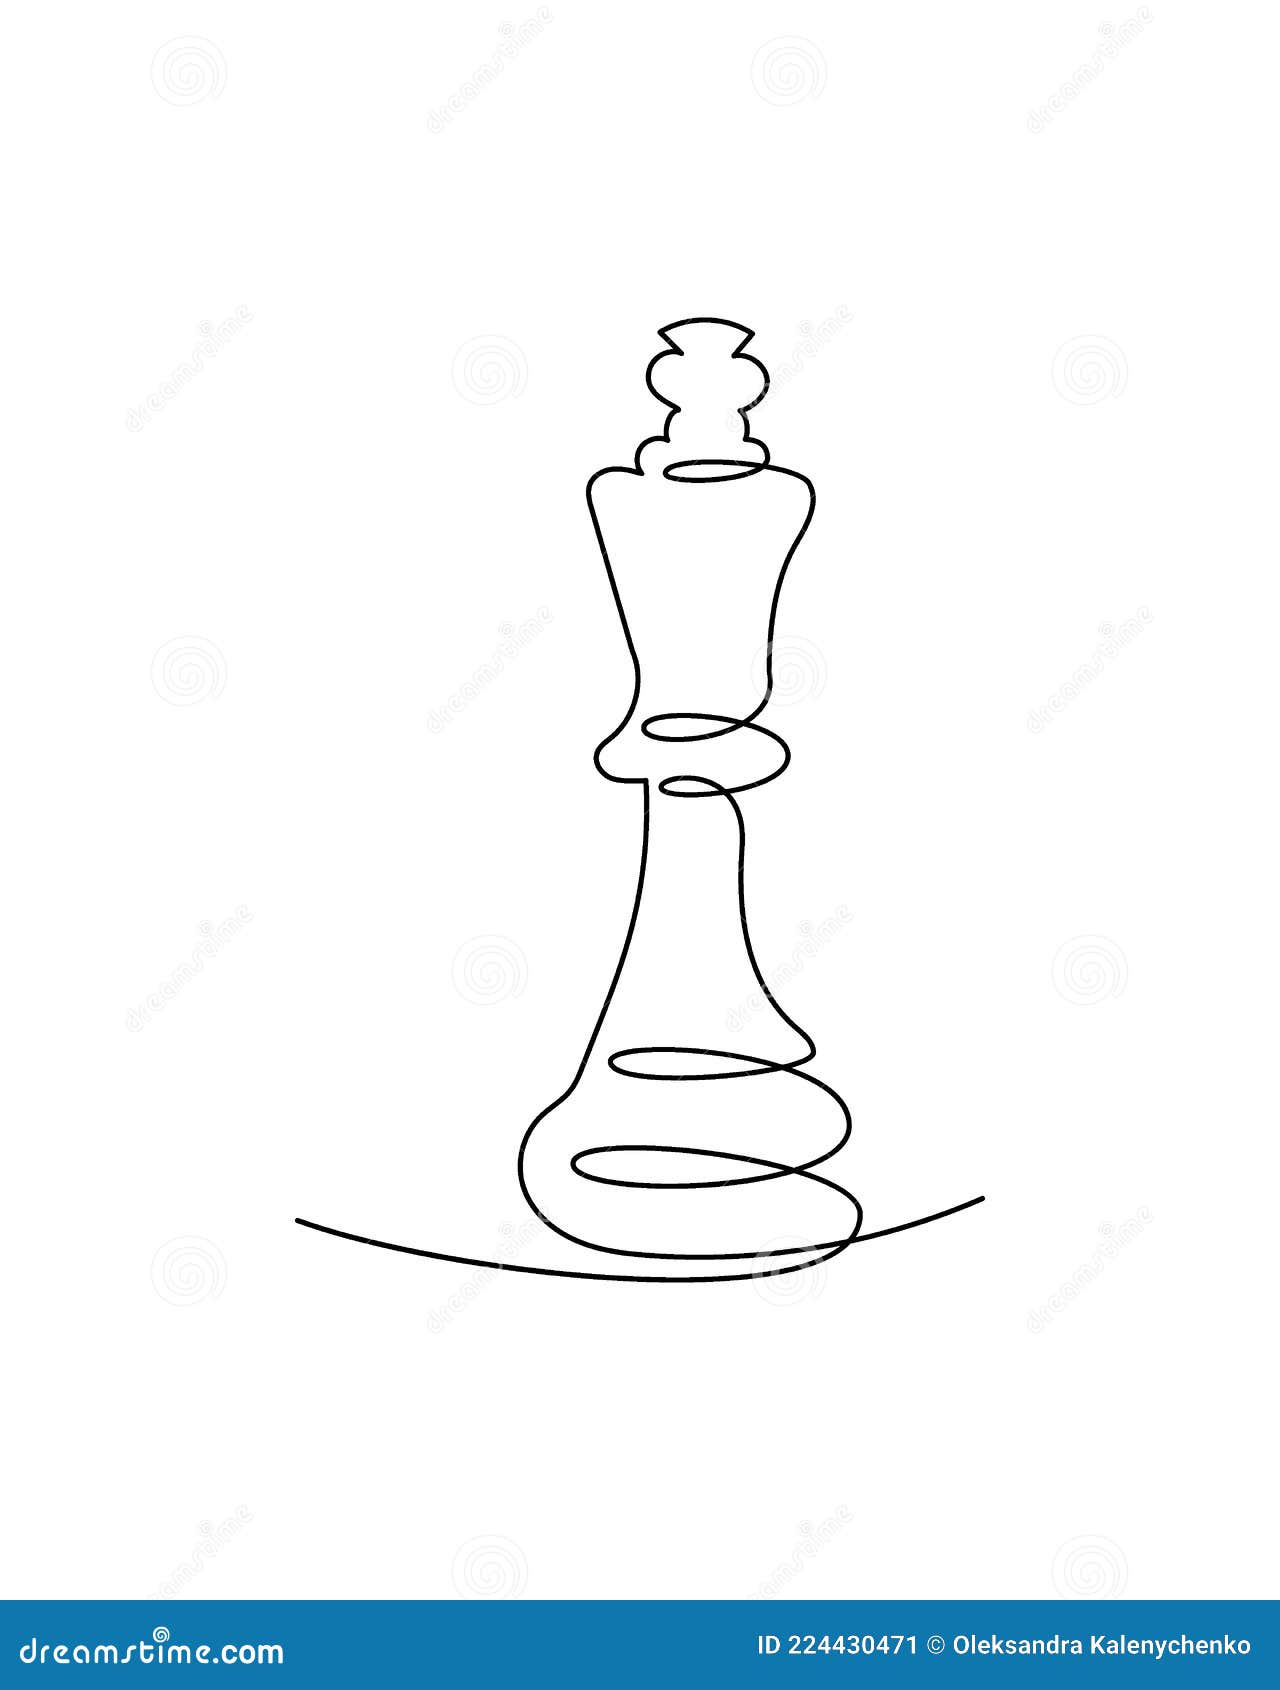 Desenho de arte de linha única de bispo de xadrez, ilustração